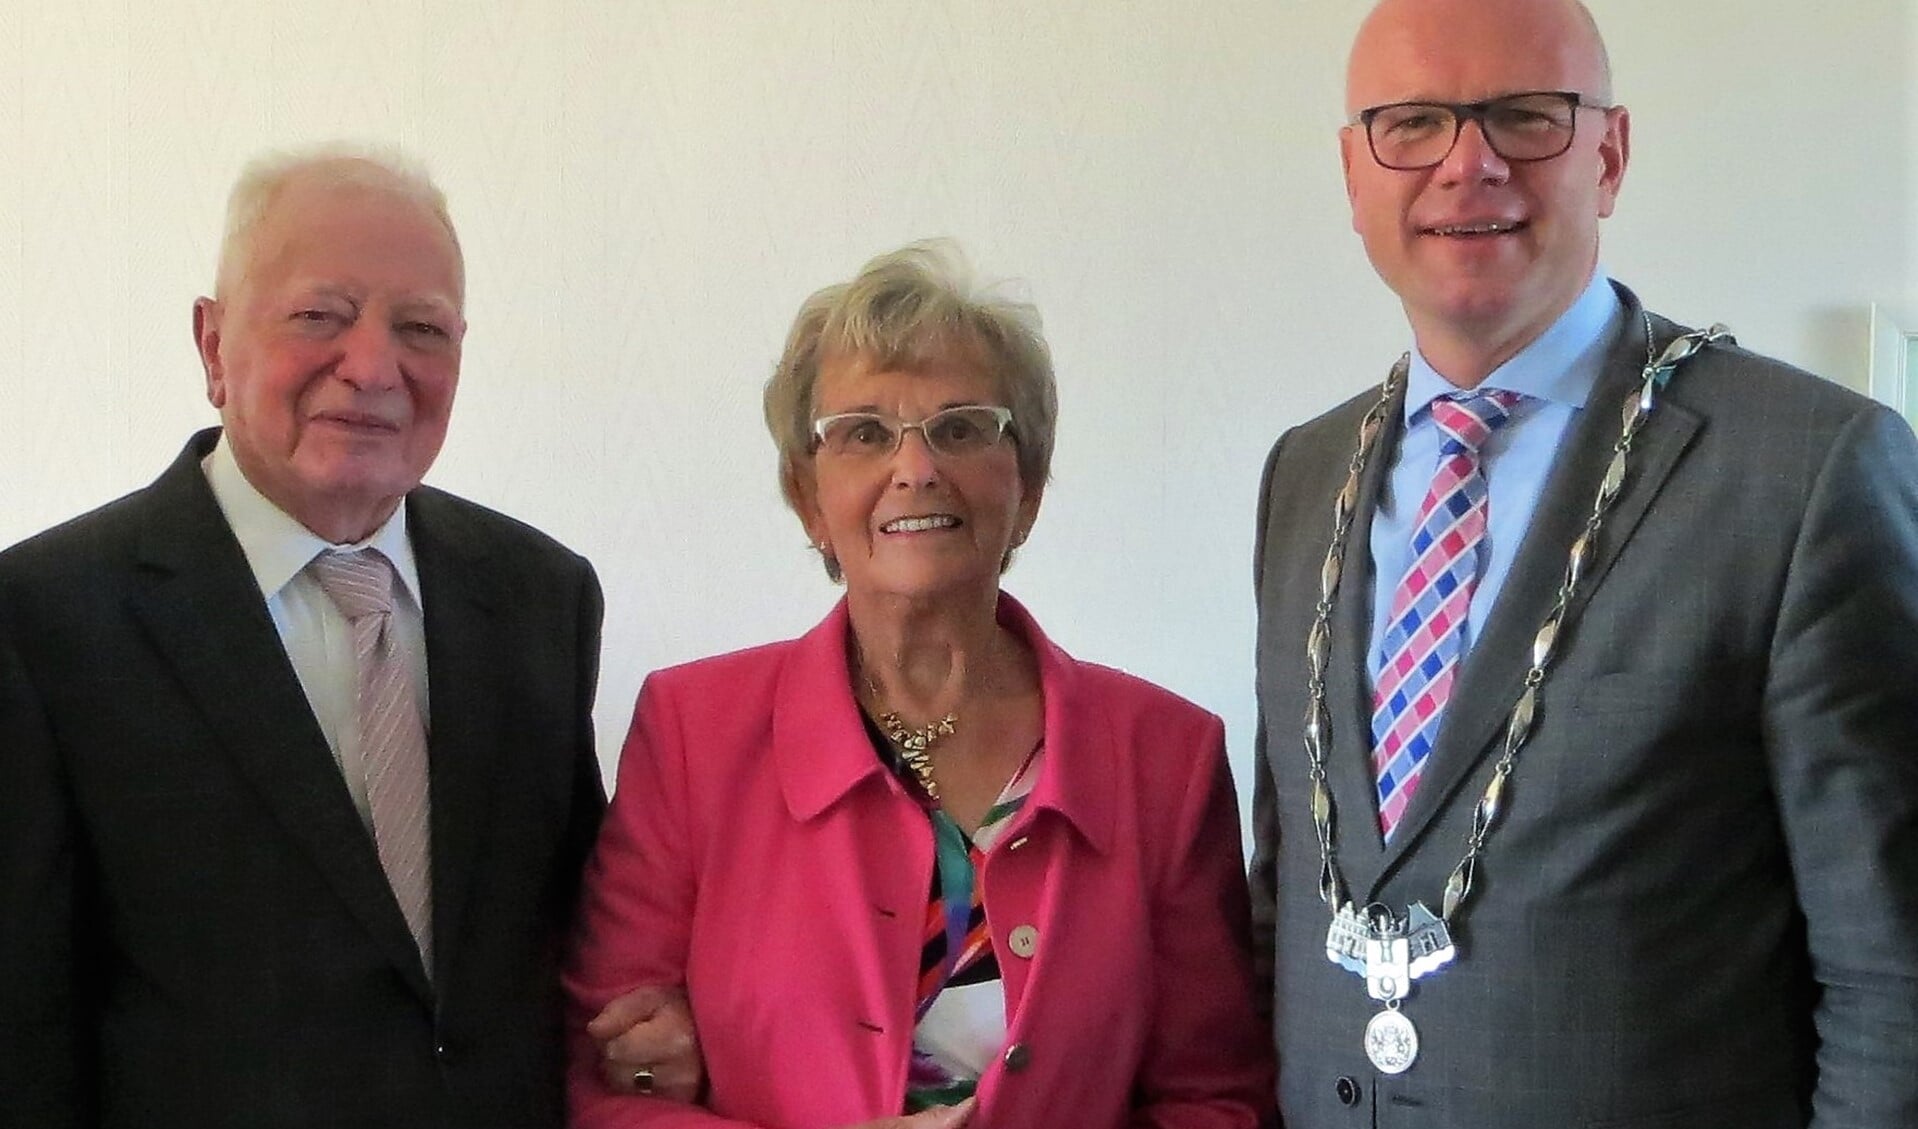 De heer en mevrouw Vreeburg met burgemeester Klaas Tigelaar (familiefoto).